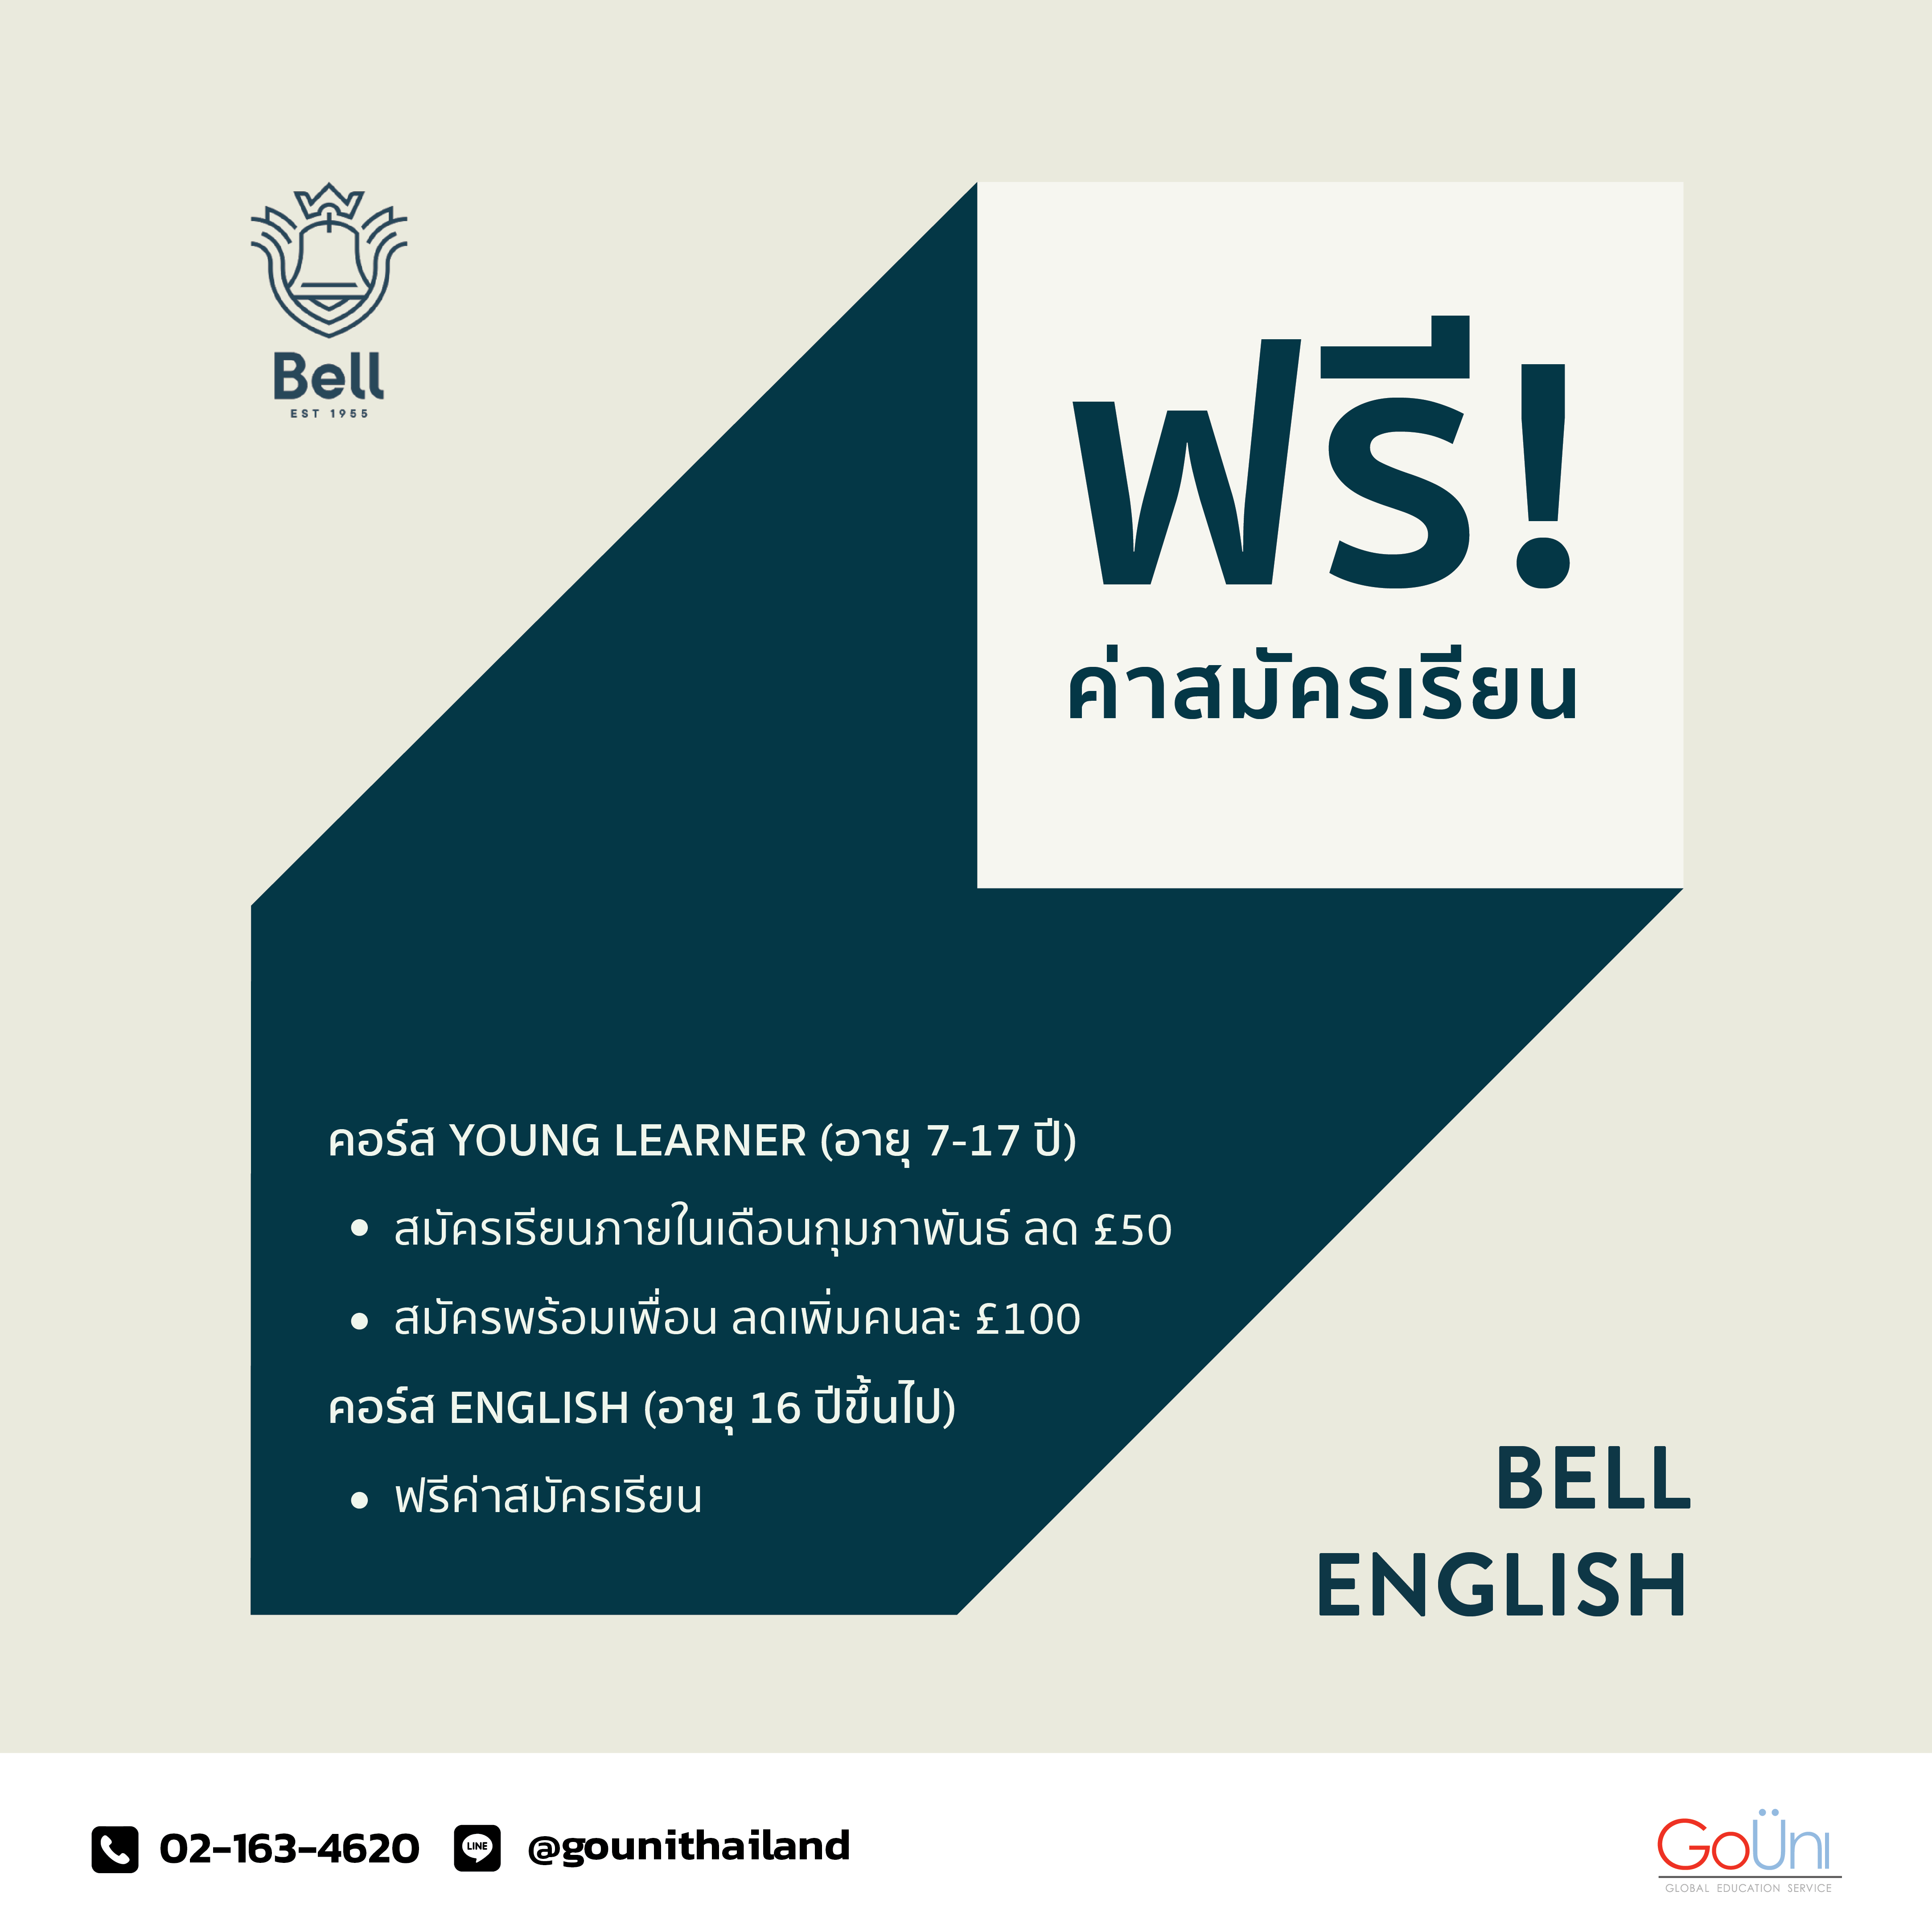 Bell 01